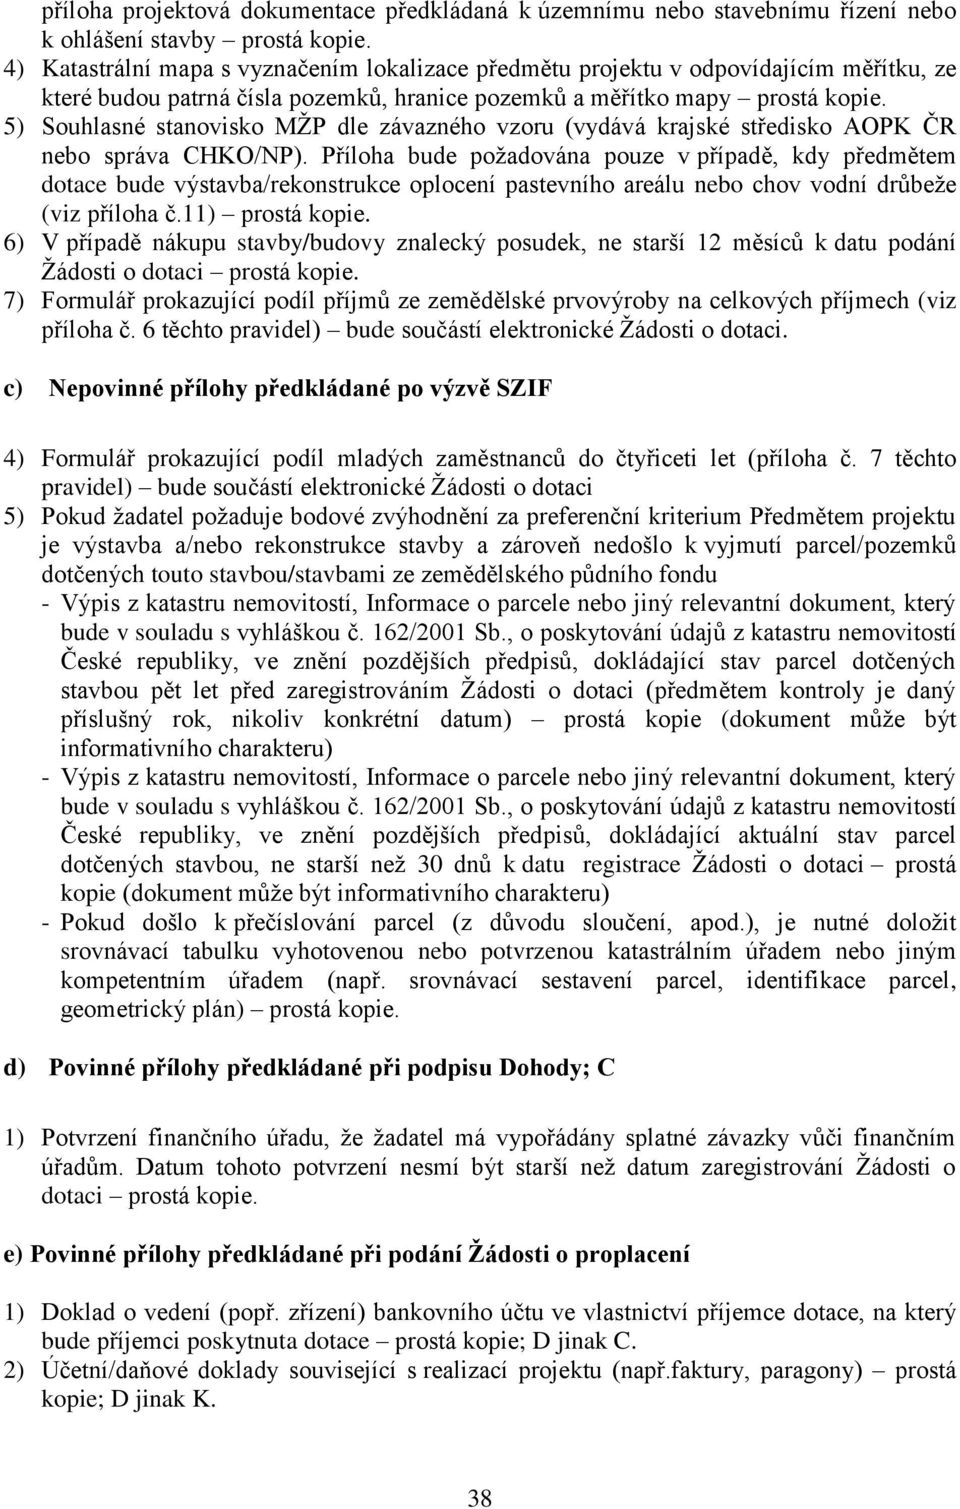 5) Souhlasné stanovisko MŢP dle závazného vzoru (vydává krajské středisko AOPK ČR nebo správa CHKO/NP).